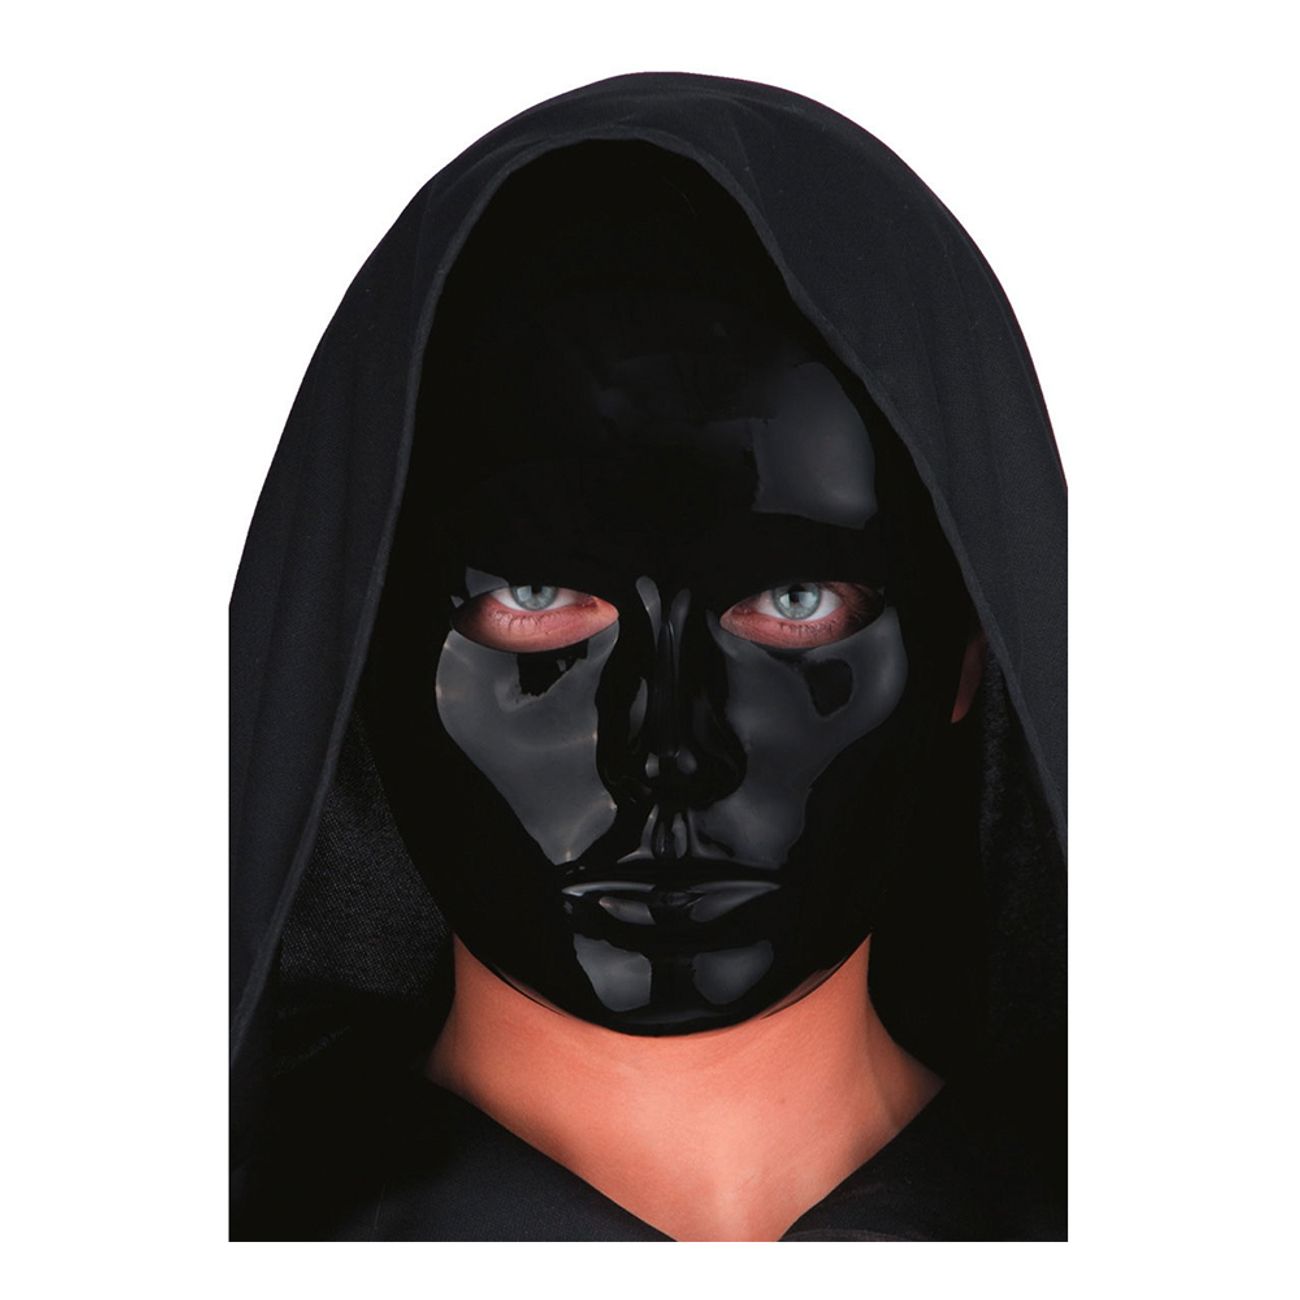 svart-mask-1